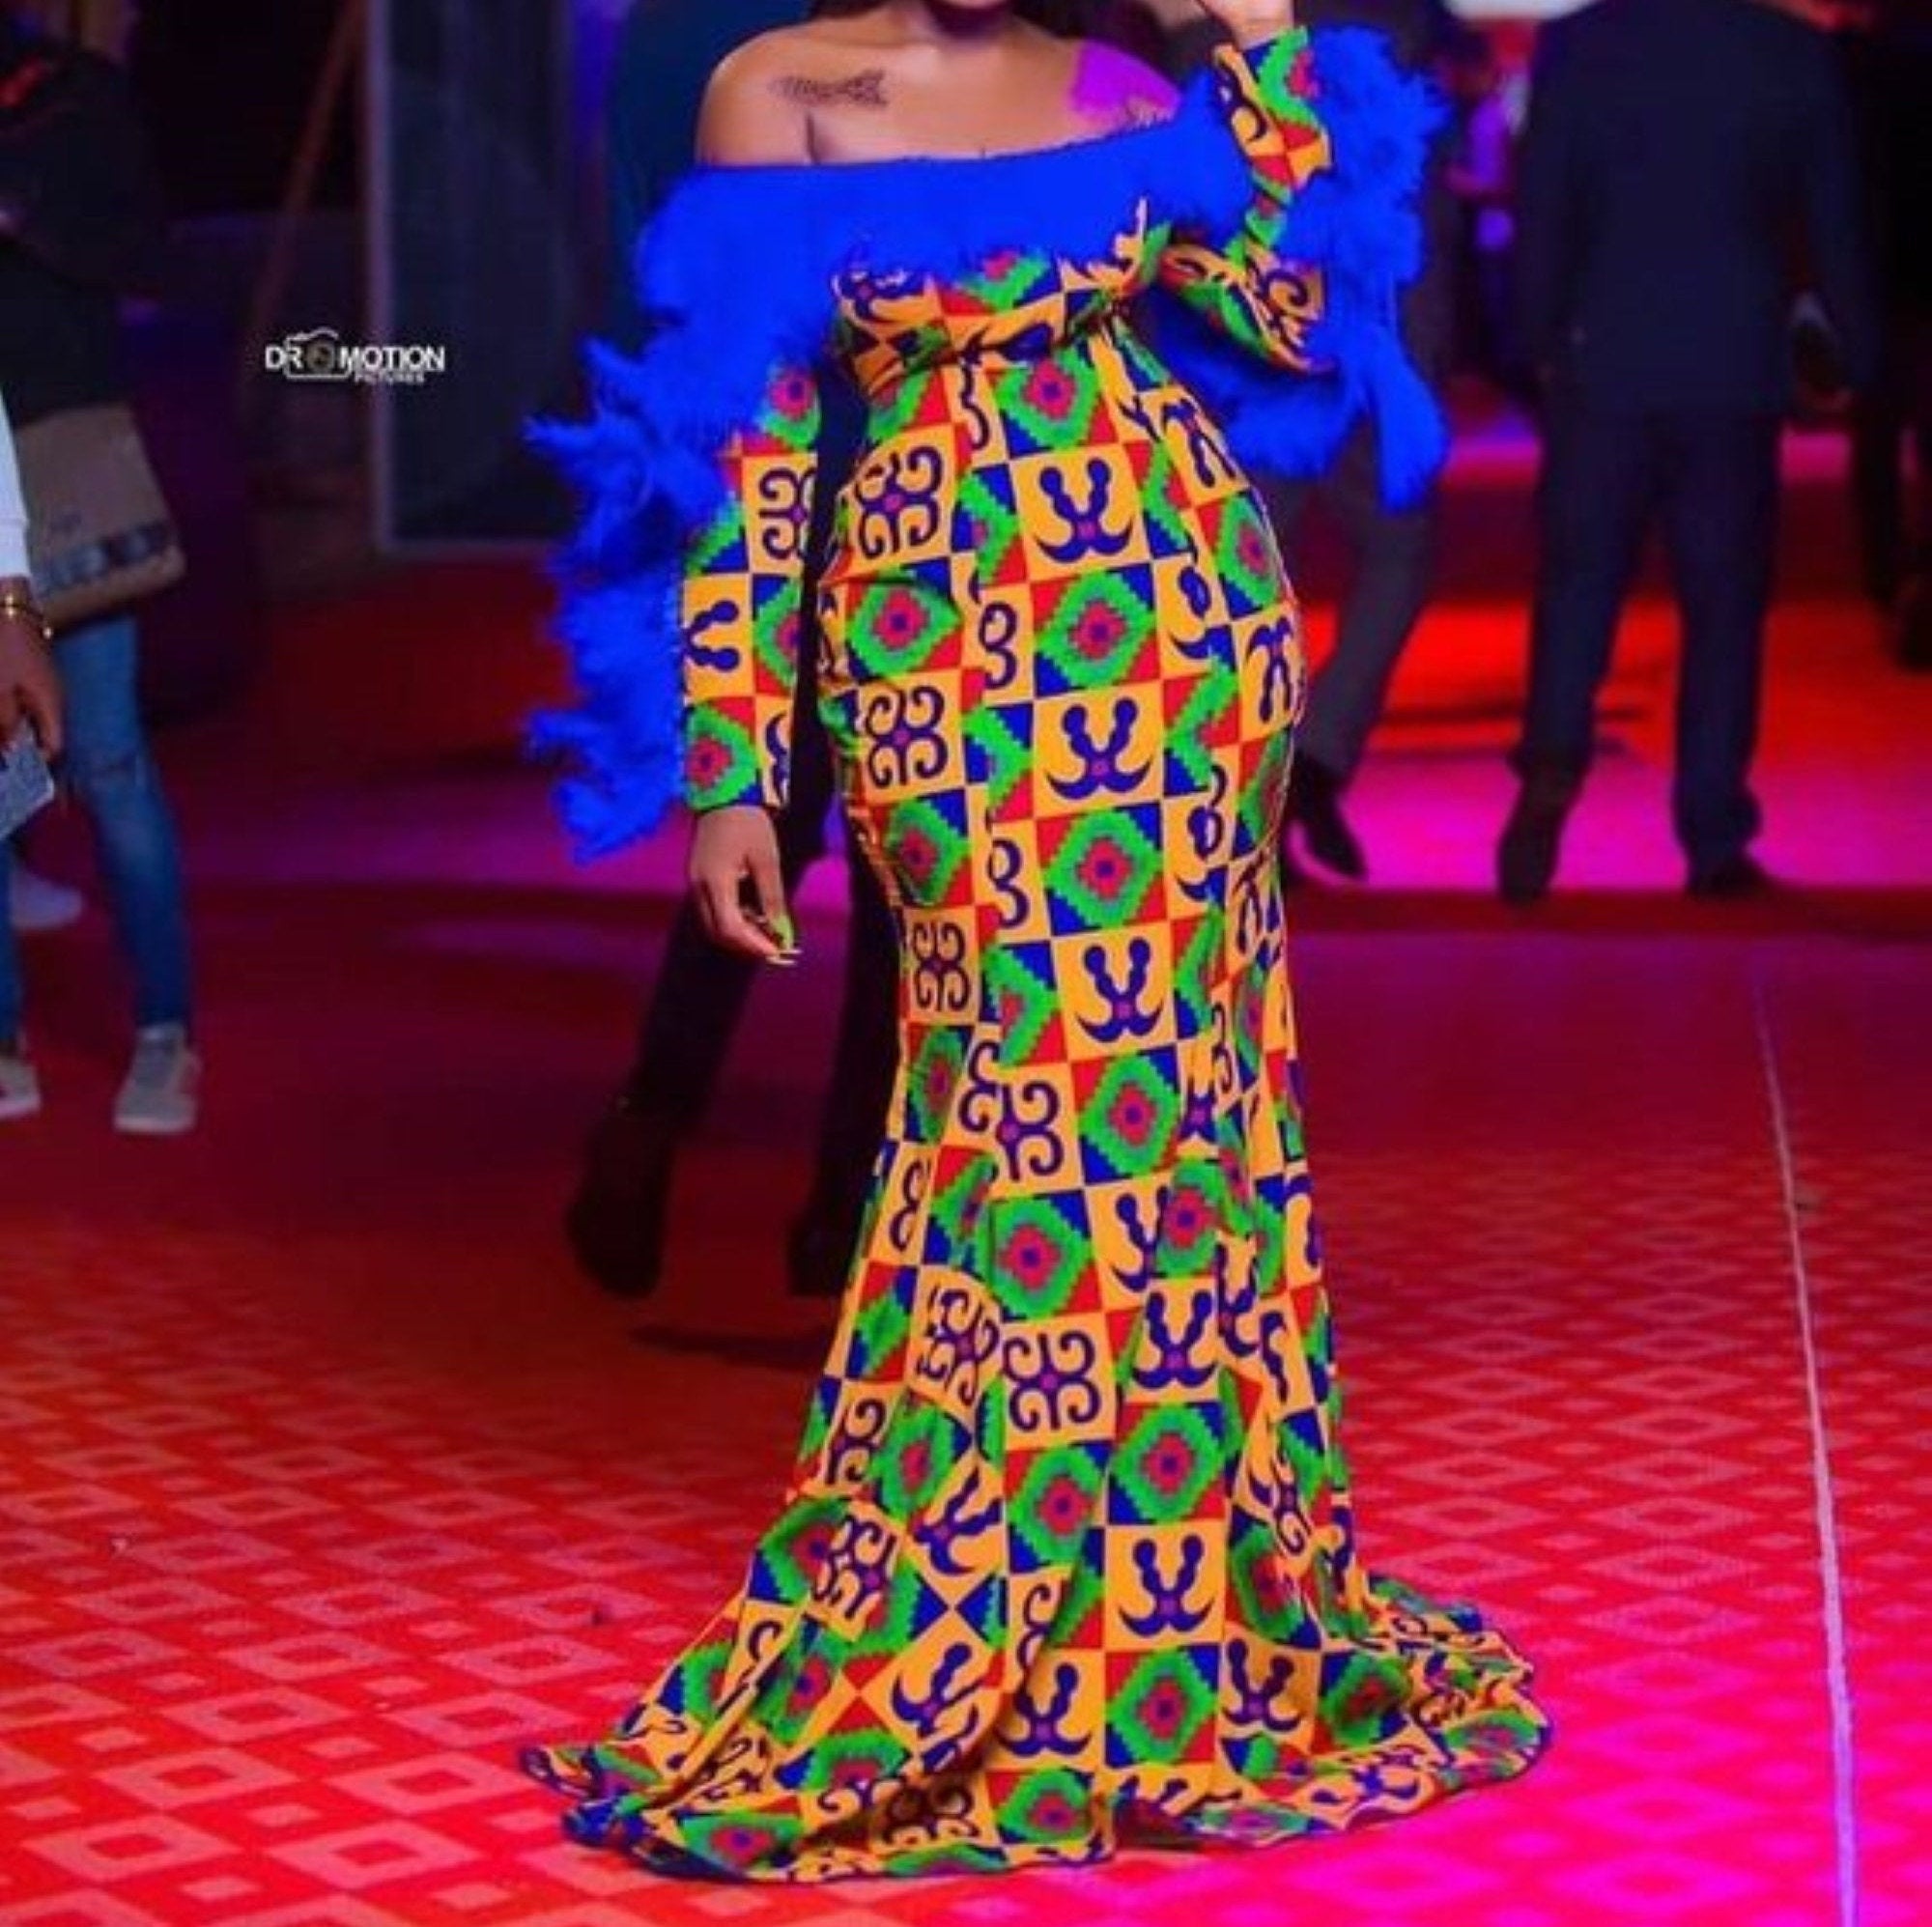 Elegant Multicolor African Kente Cloth K45 Wedding Invitation